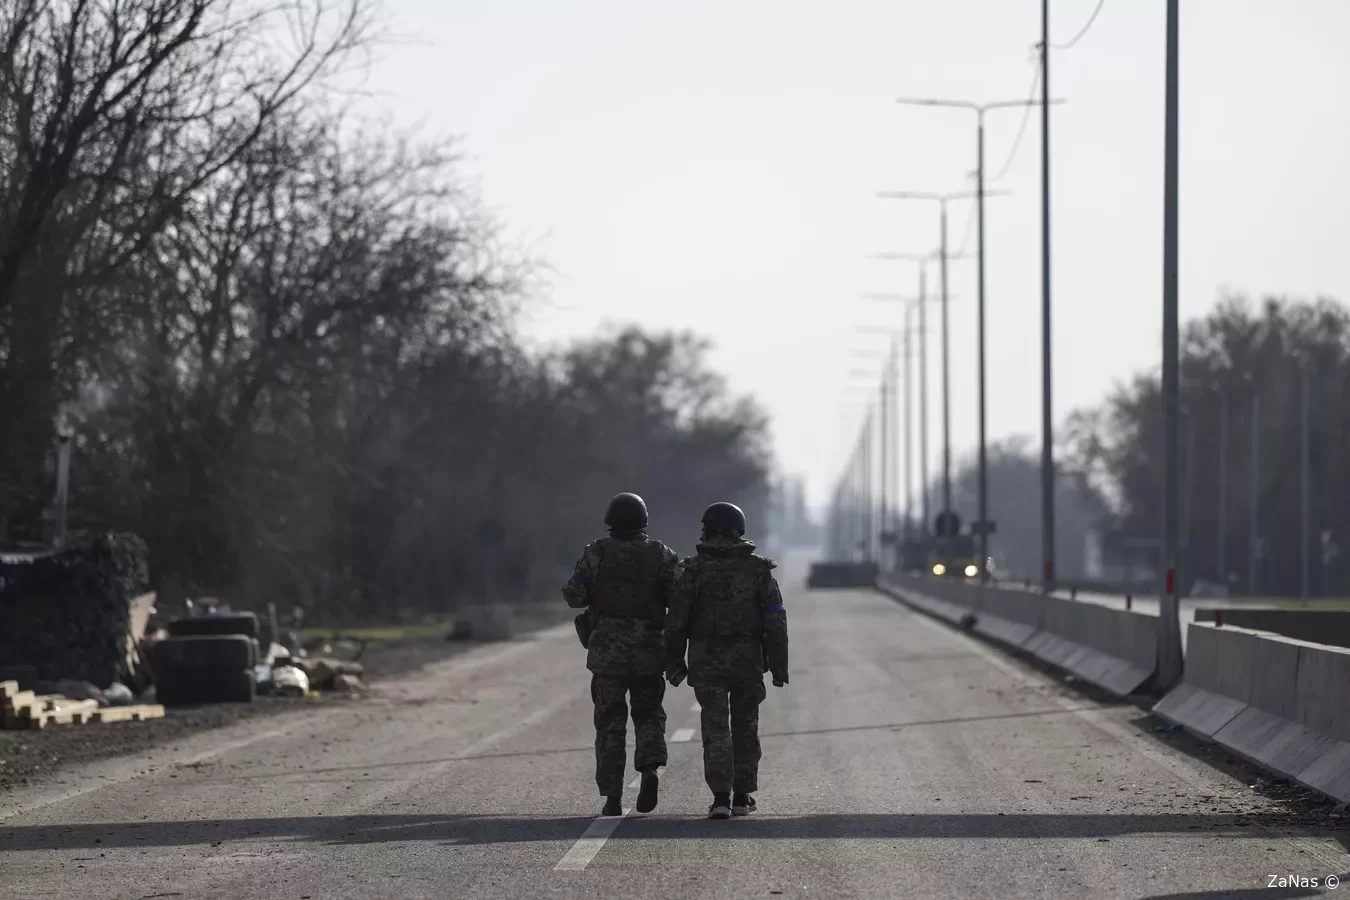 Российские военнослужащие из группировки "О" оказали помощь подорвавшемуся украинскому солдату